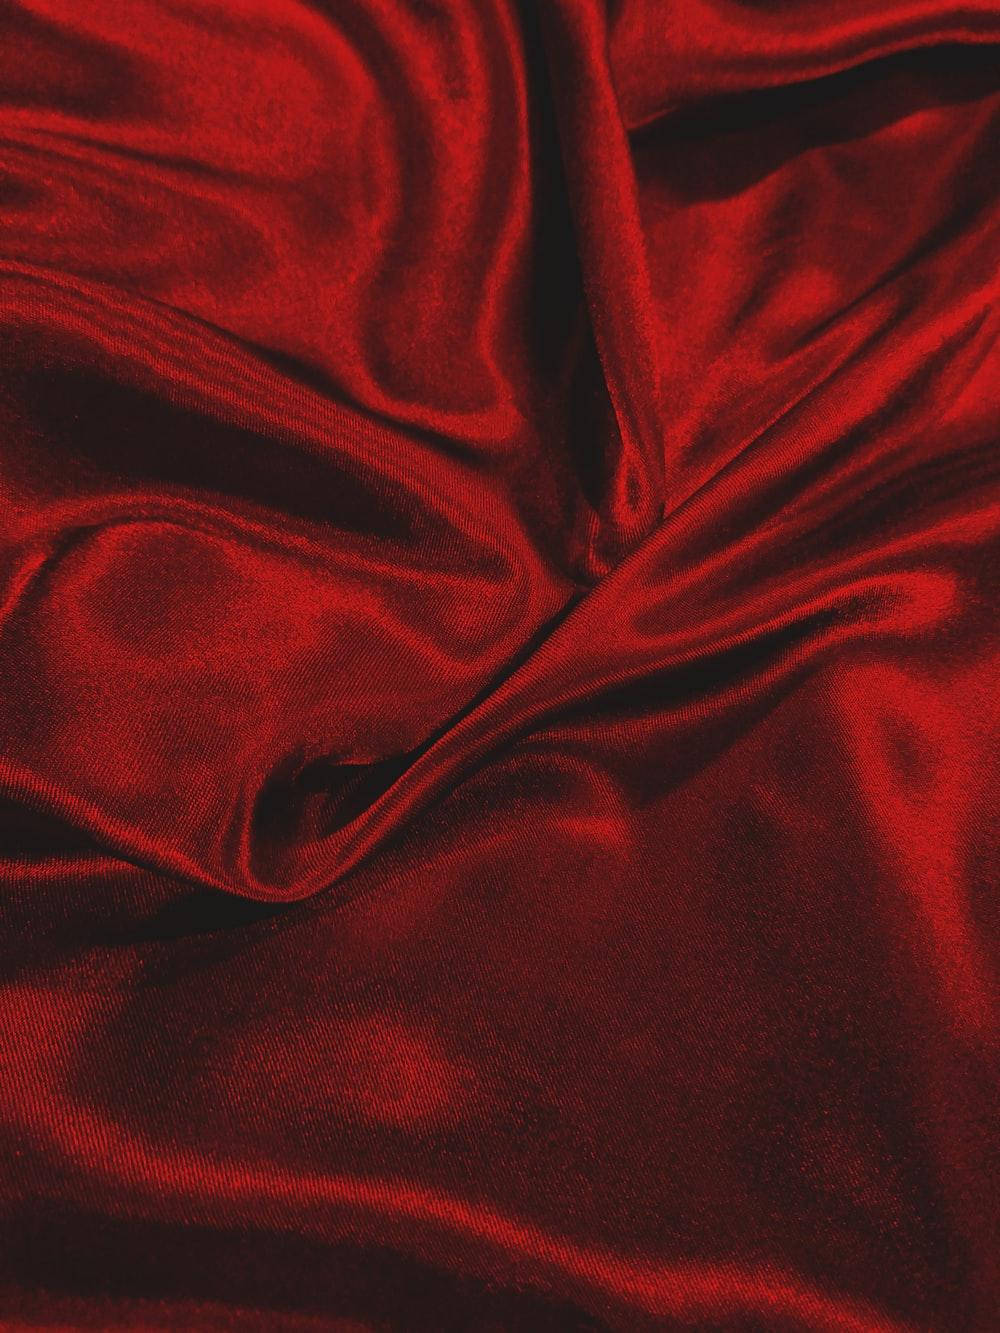 Rotebösewicht-textur Wallpaper